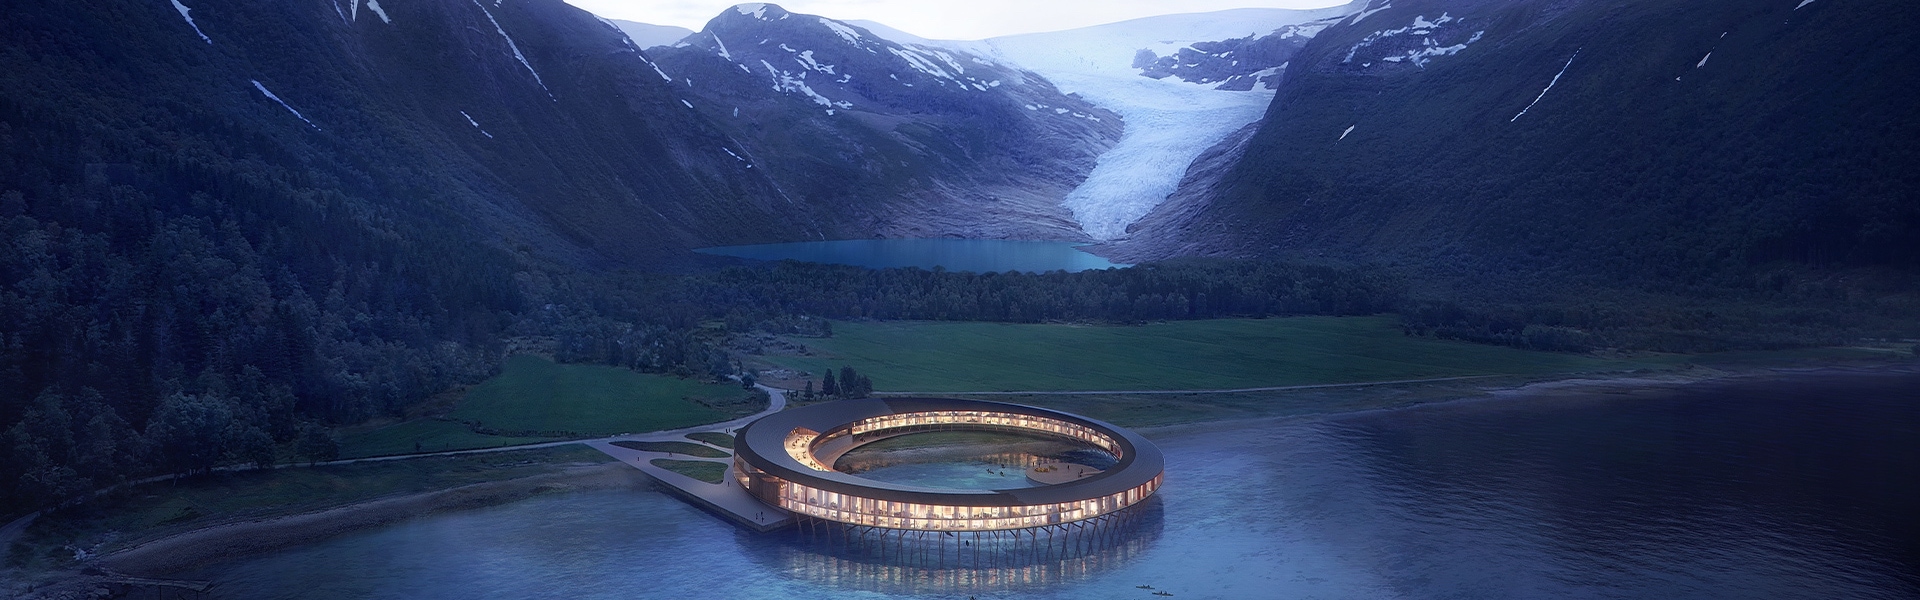 Futuristični okrogli hotel v zalivu, v ozadju ledenik